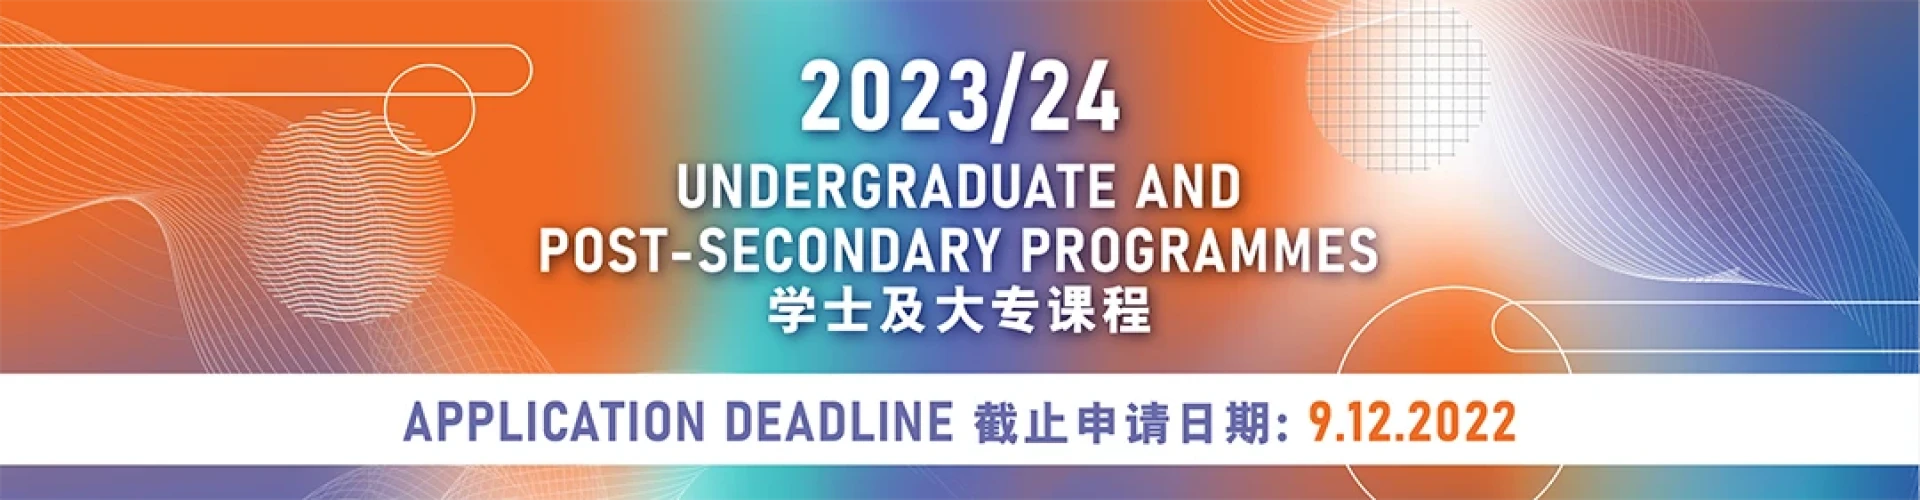 2023/24學年學士及大專課程 12月9 日截止報名